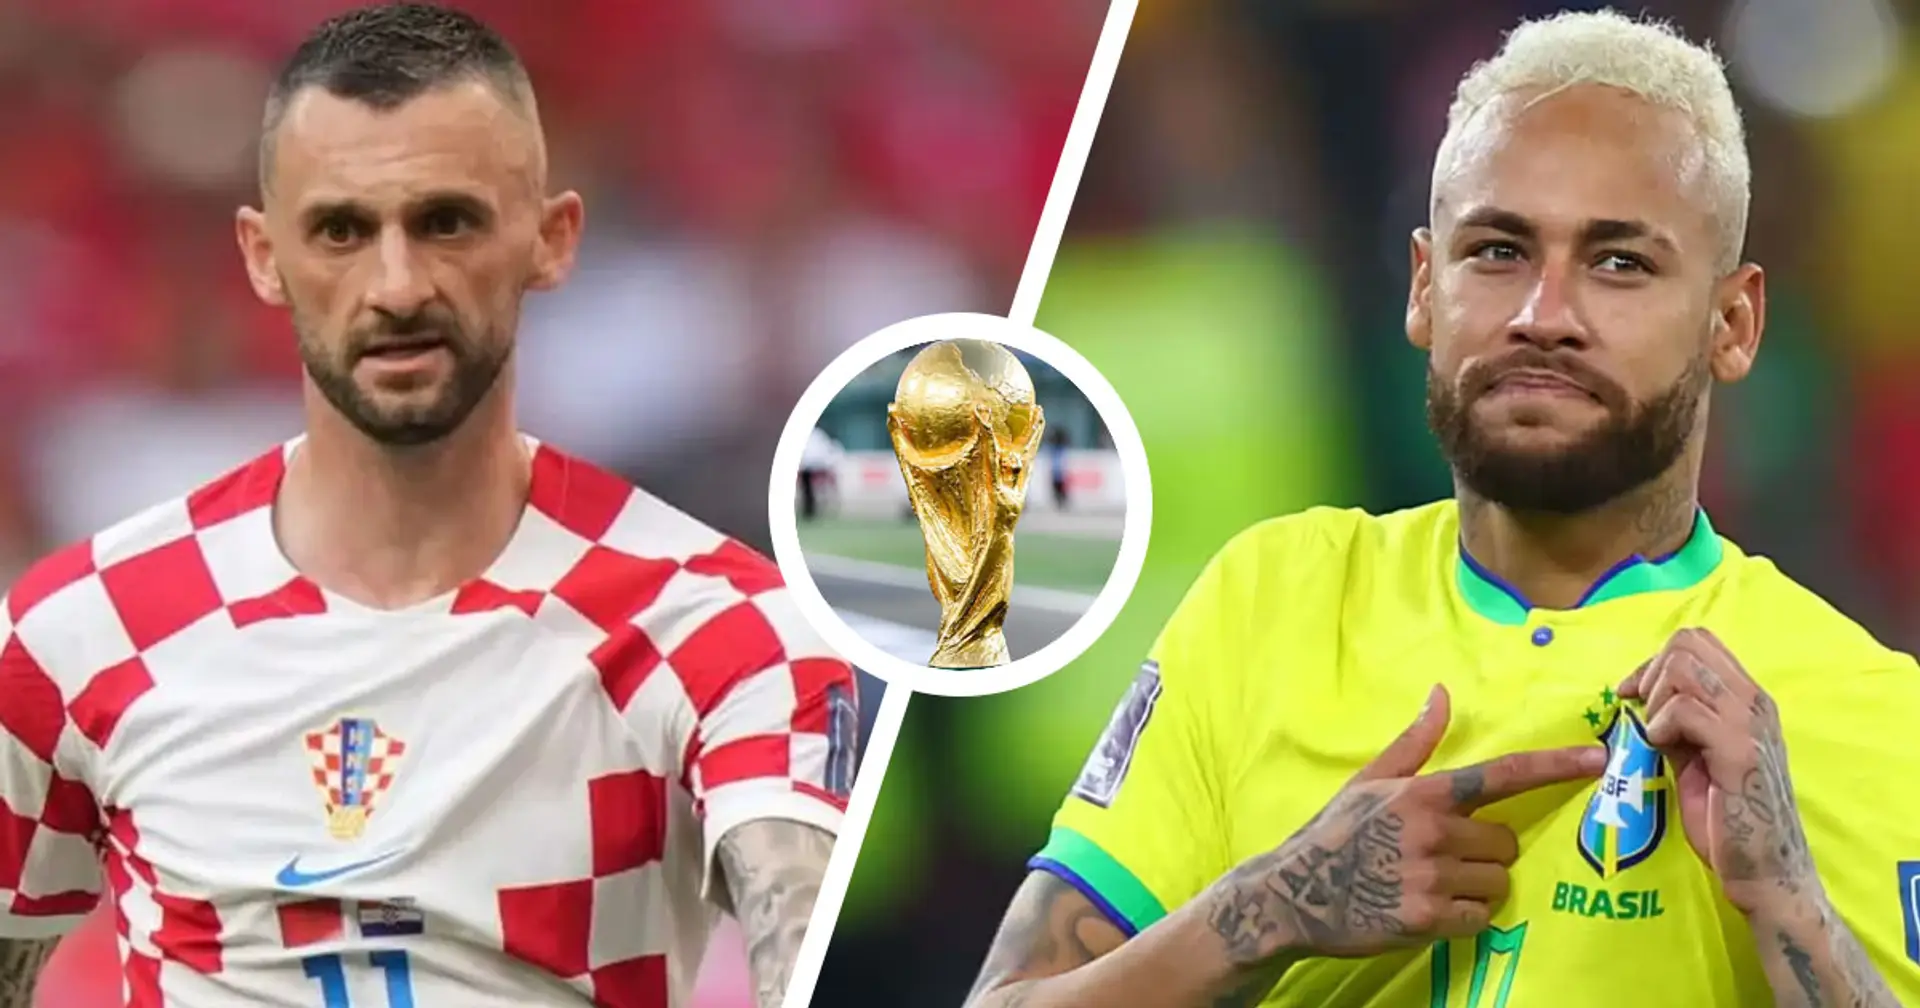 Croazia vs Brasile: le formazioni ufficiali delle squadre per la partita della Coppa del Mondo Qatar 2022 